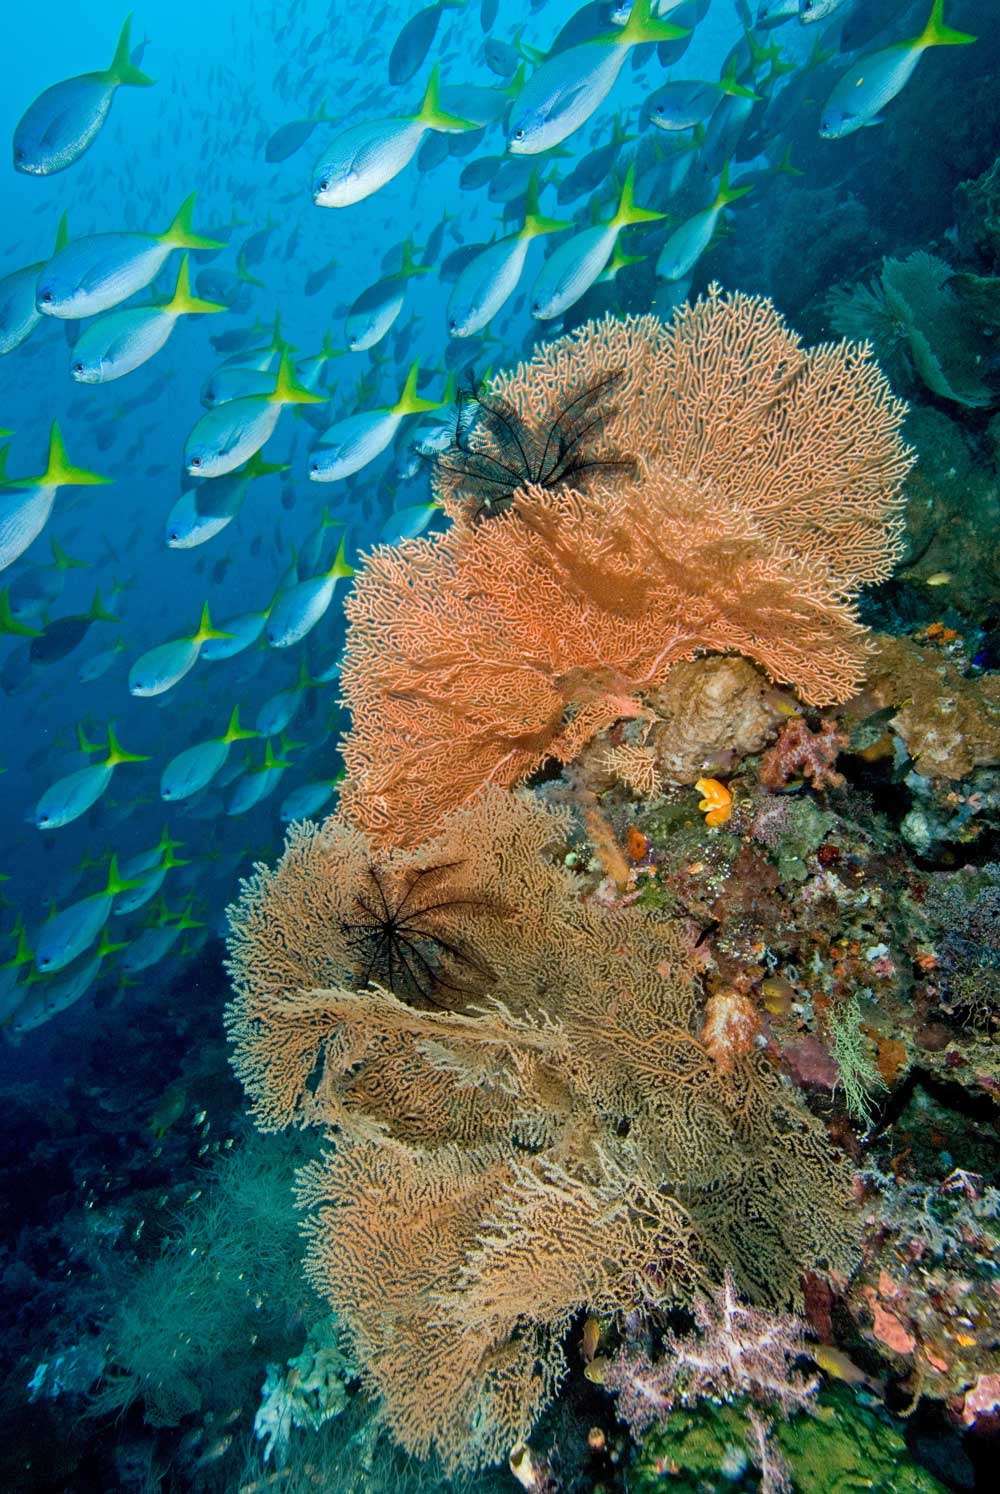 インドネシア・ラジャアンパット海洋保護区、ミソール島の南に浮かぶフィアバチェット島のダイビングスポット「ホエールロック」。この海域は多様性が非常に豊かなことで知られる。